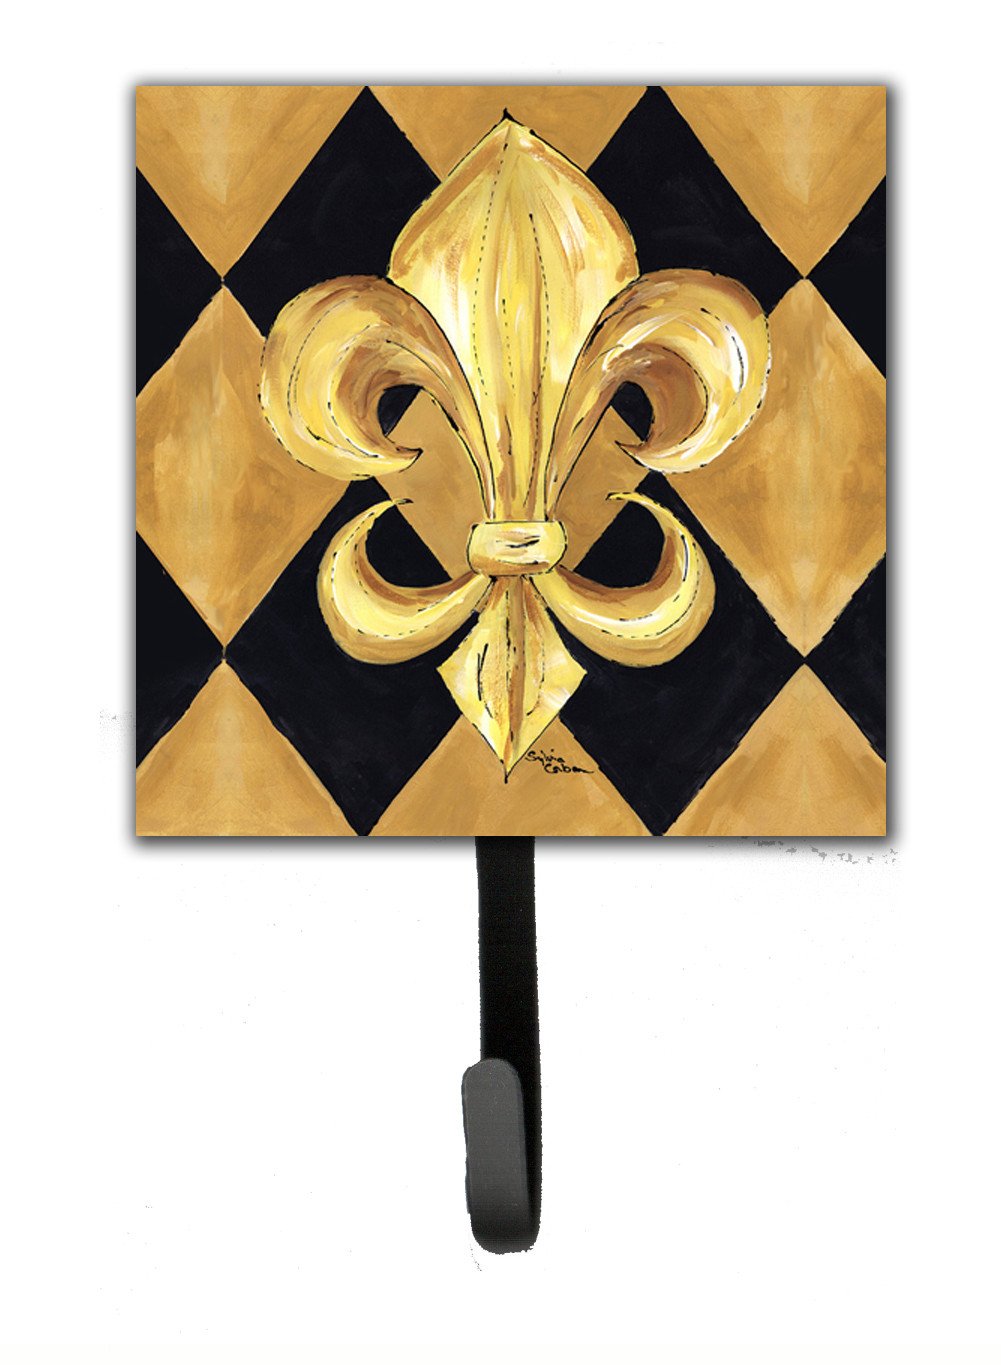 Black and Gold Fleur de lis New Orleans Leash Holder or Key Hook by Caroline's Treasures